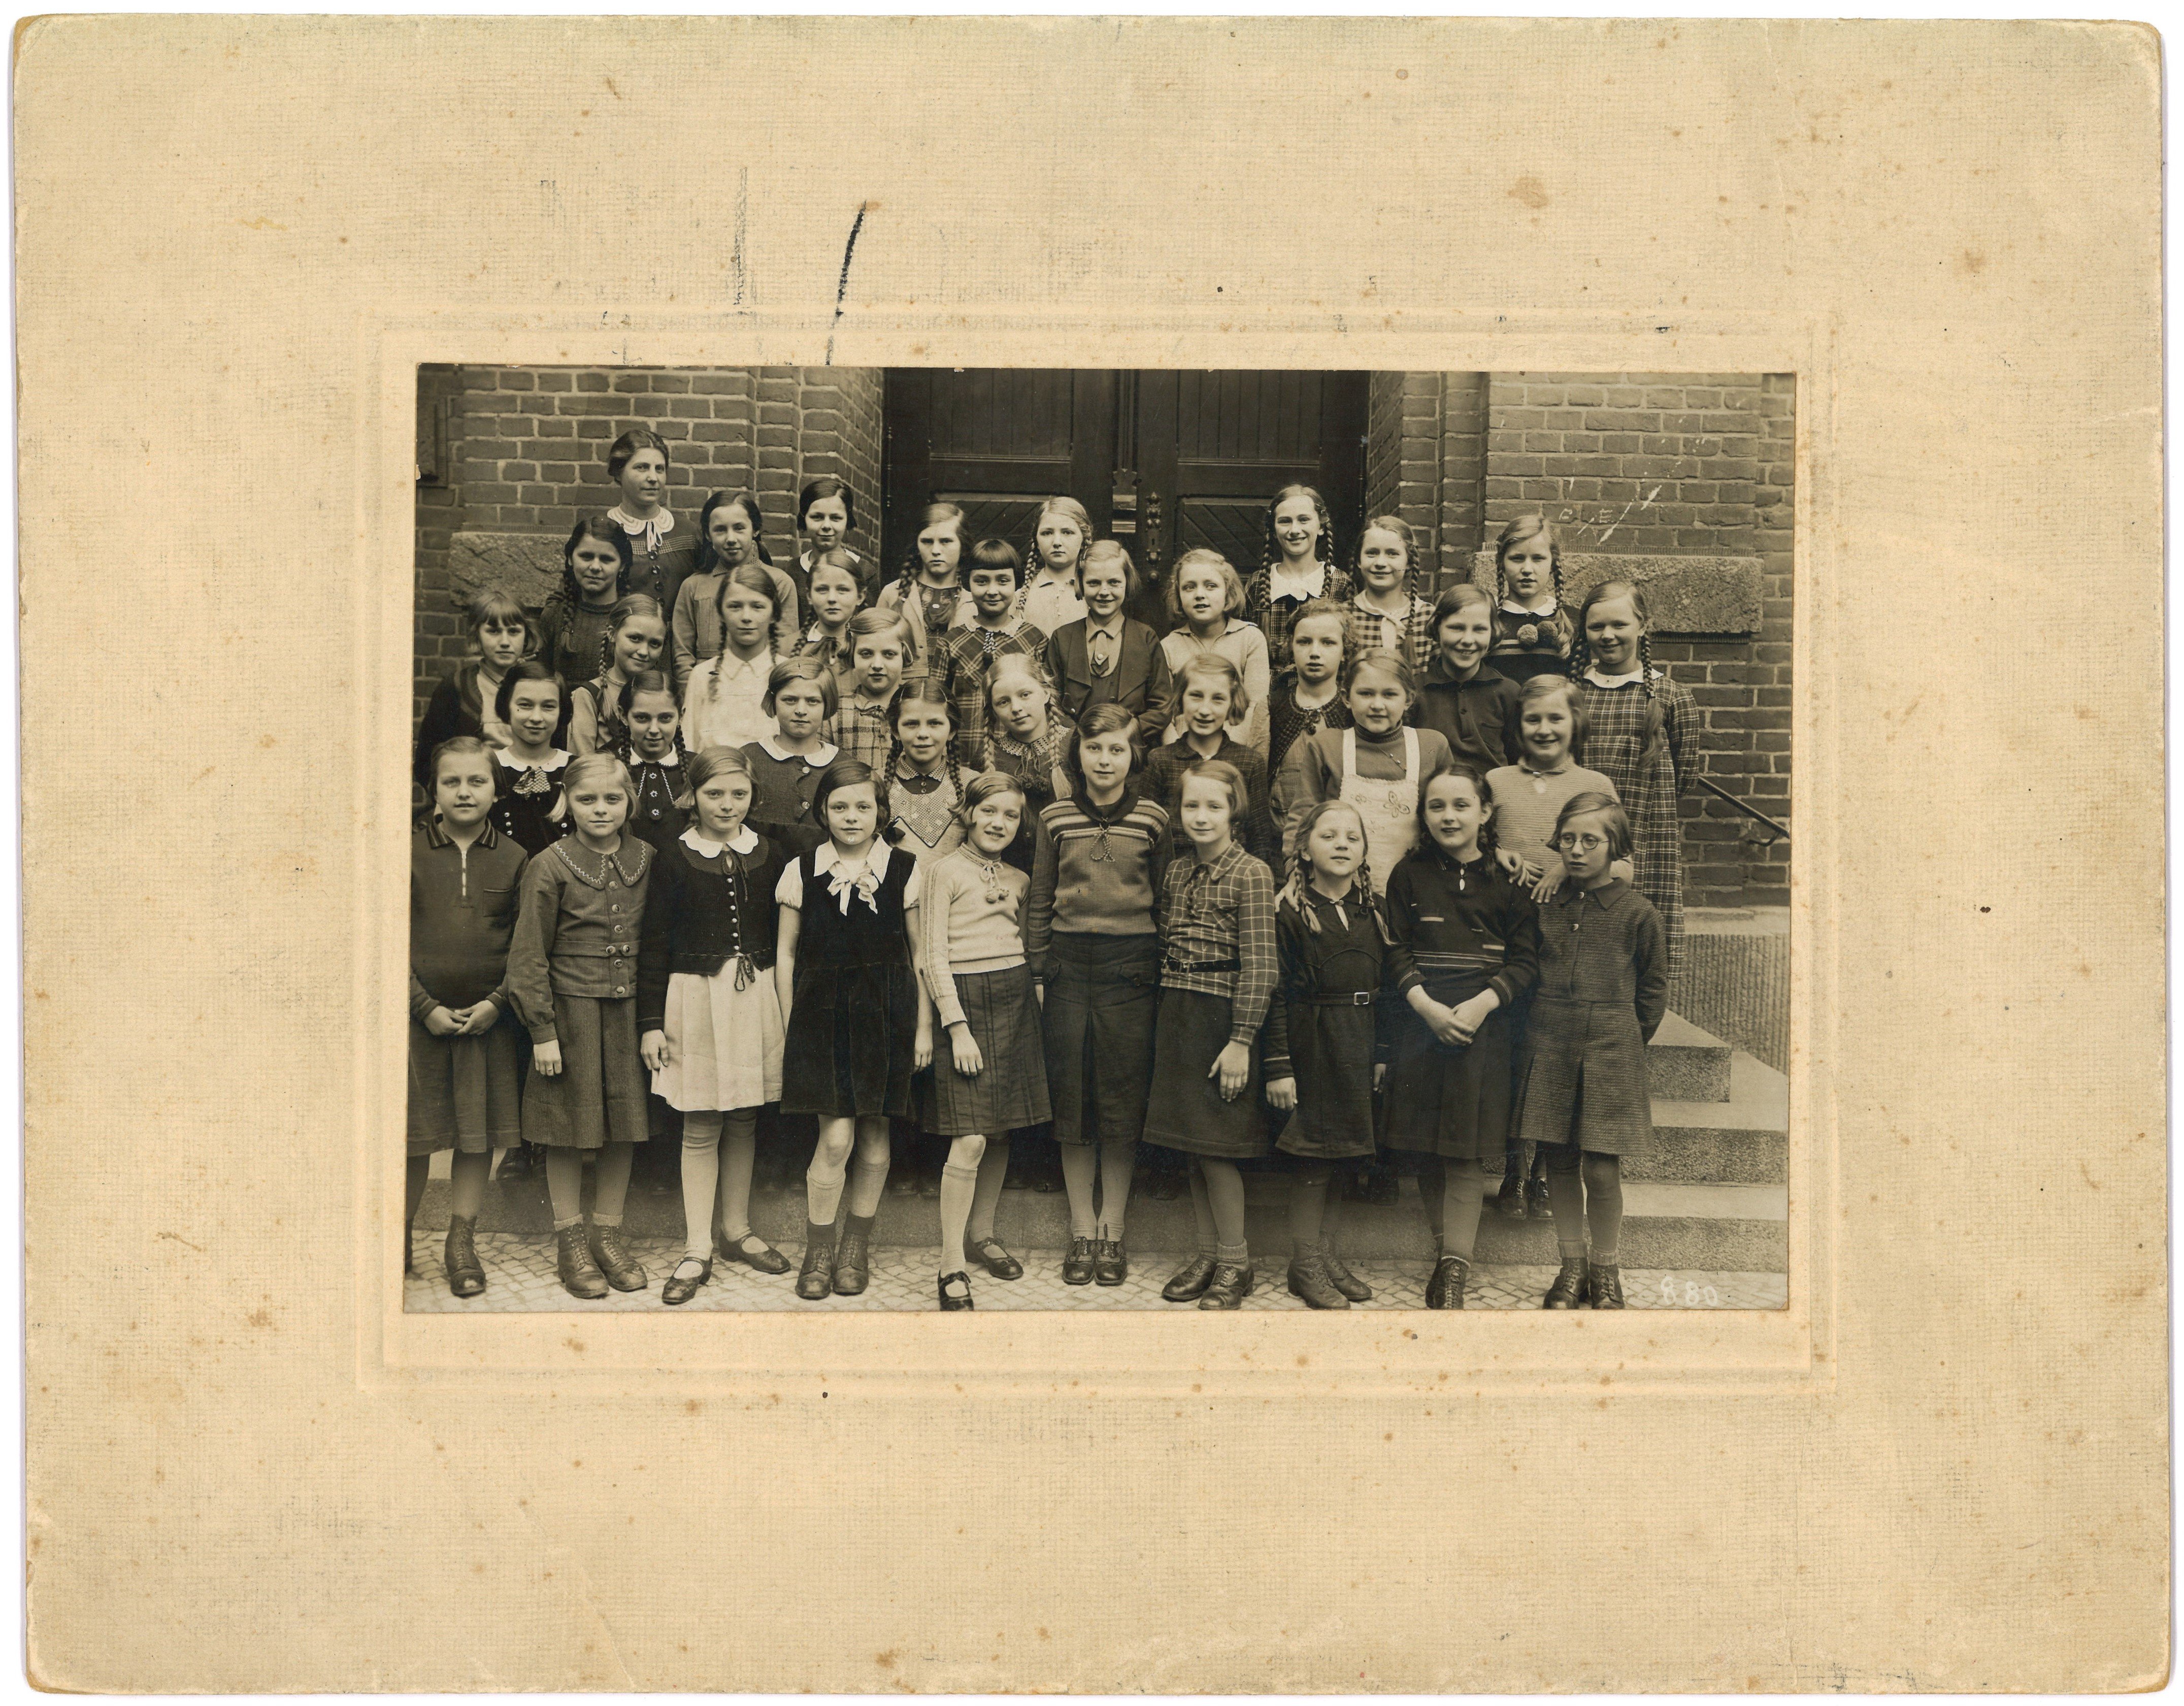 Berlin-Pankow: Klassenbild der 1. Volksschule 1936 (Landesgeschichtliche Vereinigung für die Mark Brandenburg e.V., Archiv CC BY)